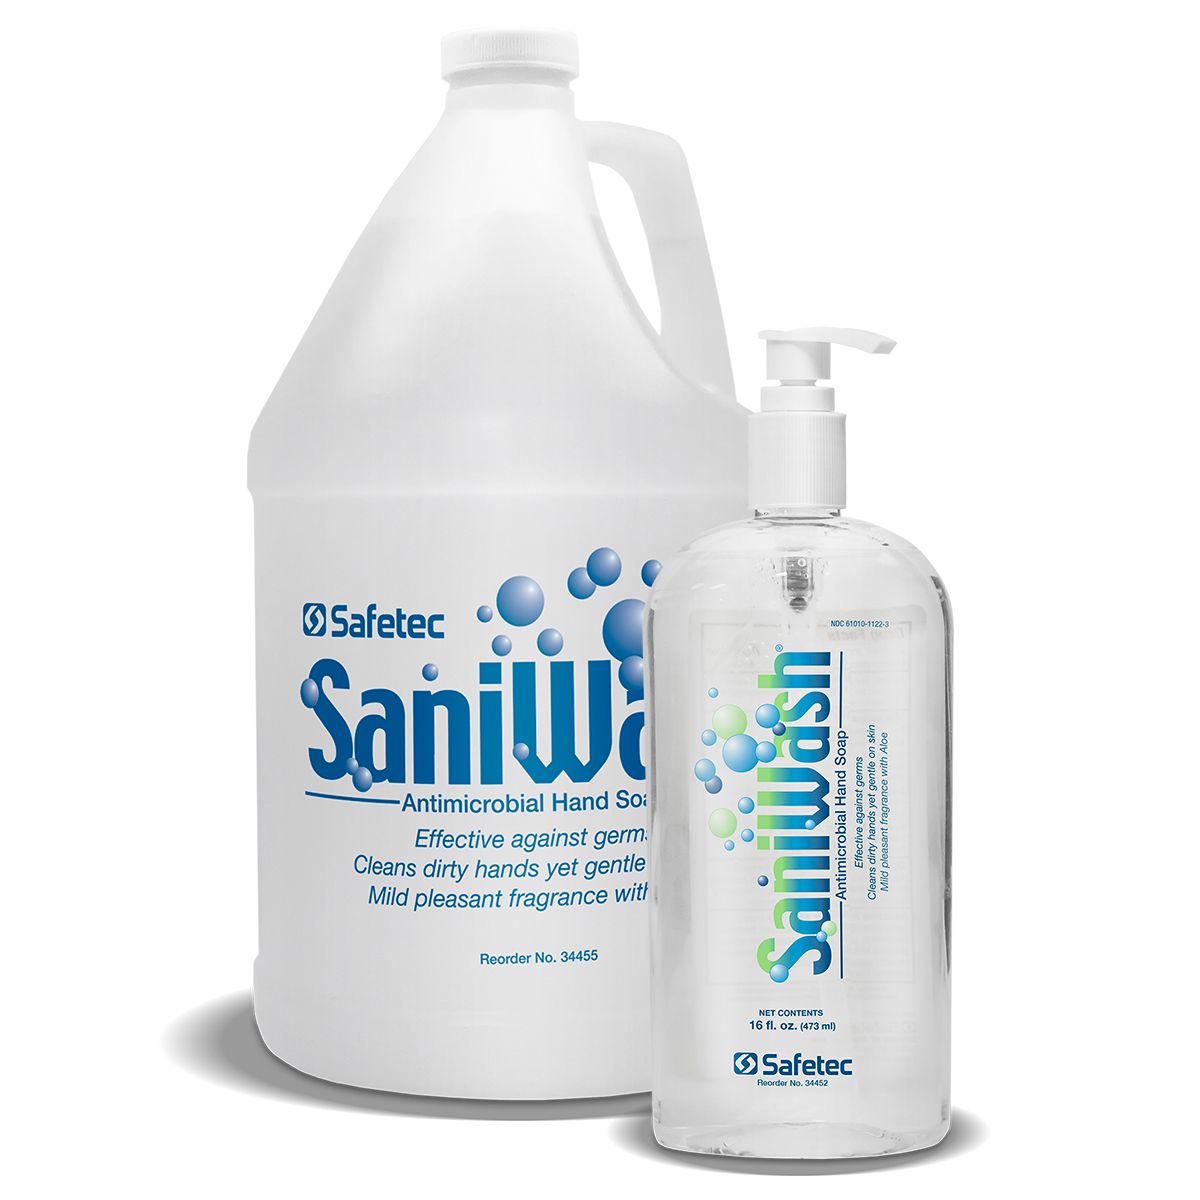 34452和34455 Safetec®SaniWash®抗菌洗手液(16盎司和1加仑)